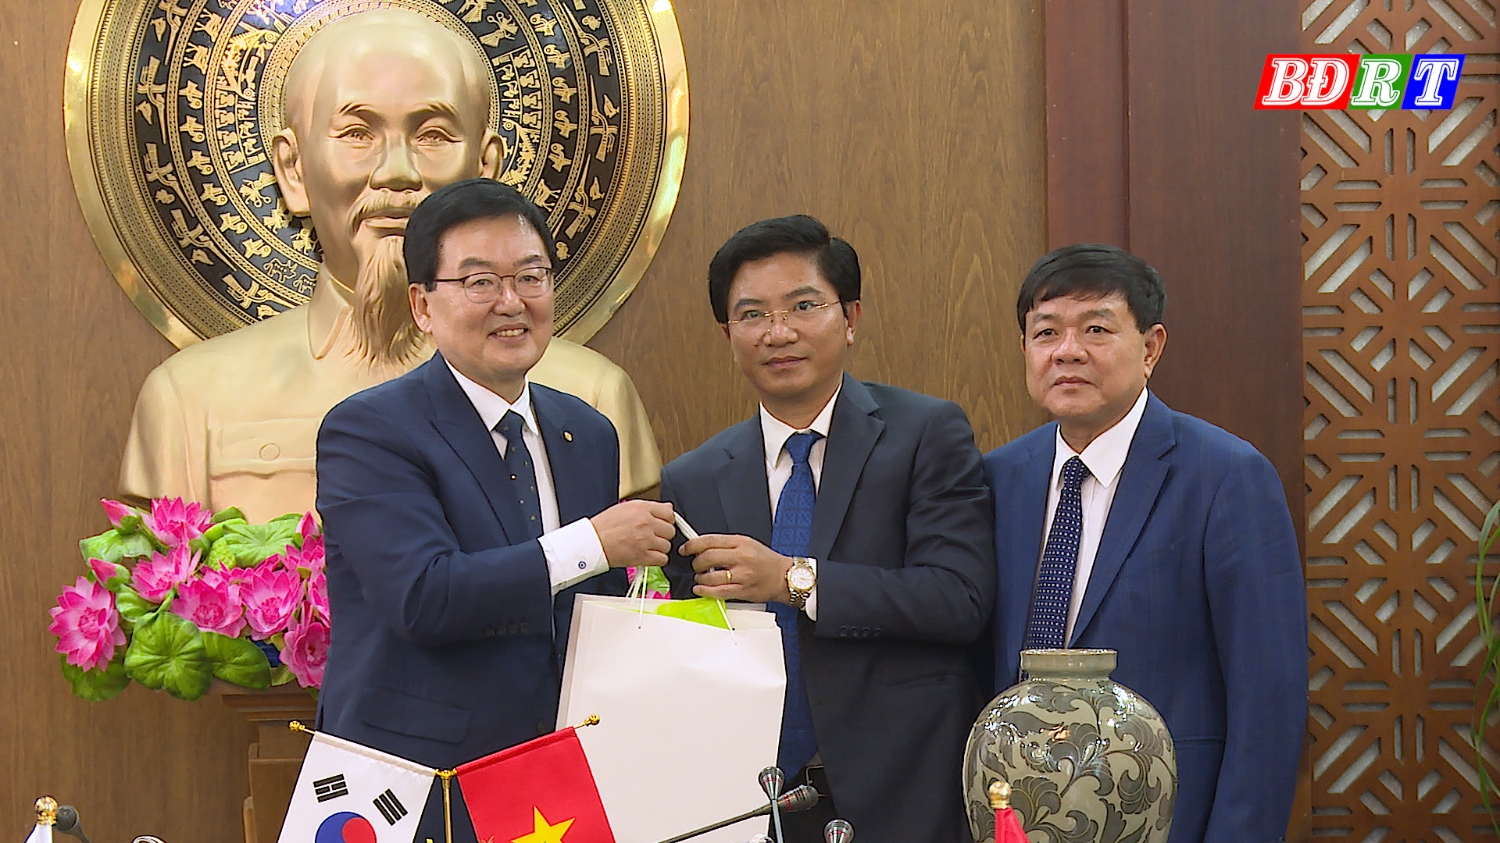 Ông Trương An Ninh, Uỷ viên thường vụ Tỉnh ủy, Bí thư Thị ủy tặng quà lưu niệm cho ông Quận trưởng Mun In